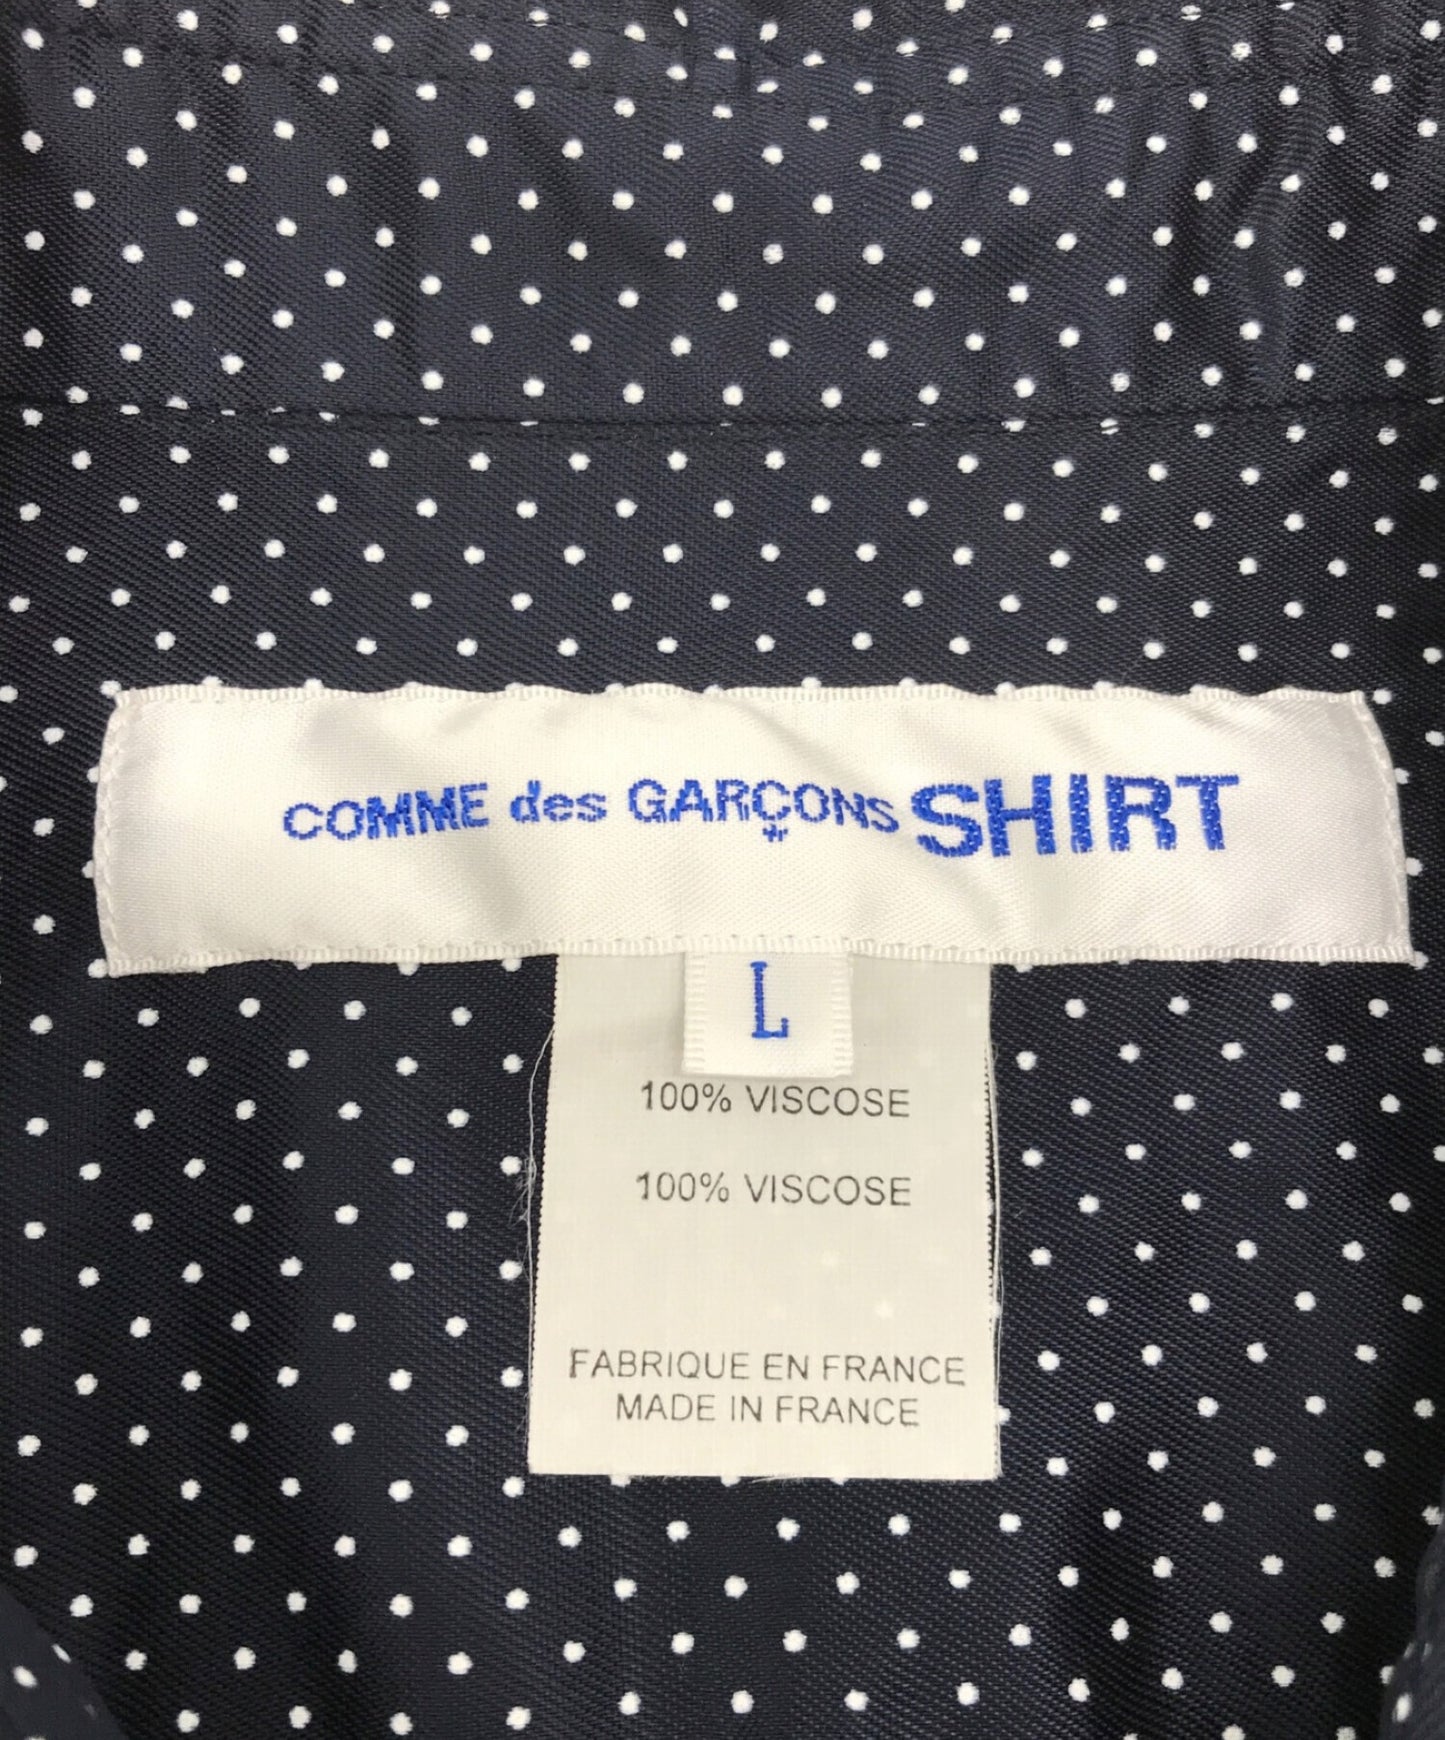 Comme des Garcons 셔츠 도트 패턴 셔츠 긴팔 셔츠 셔츠 S27063